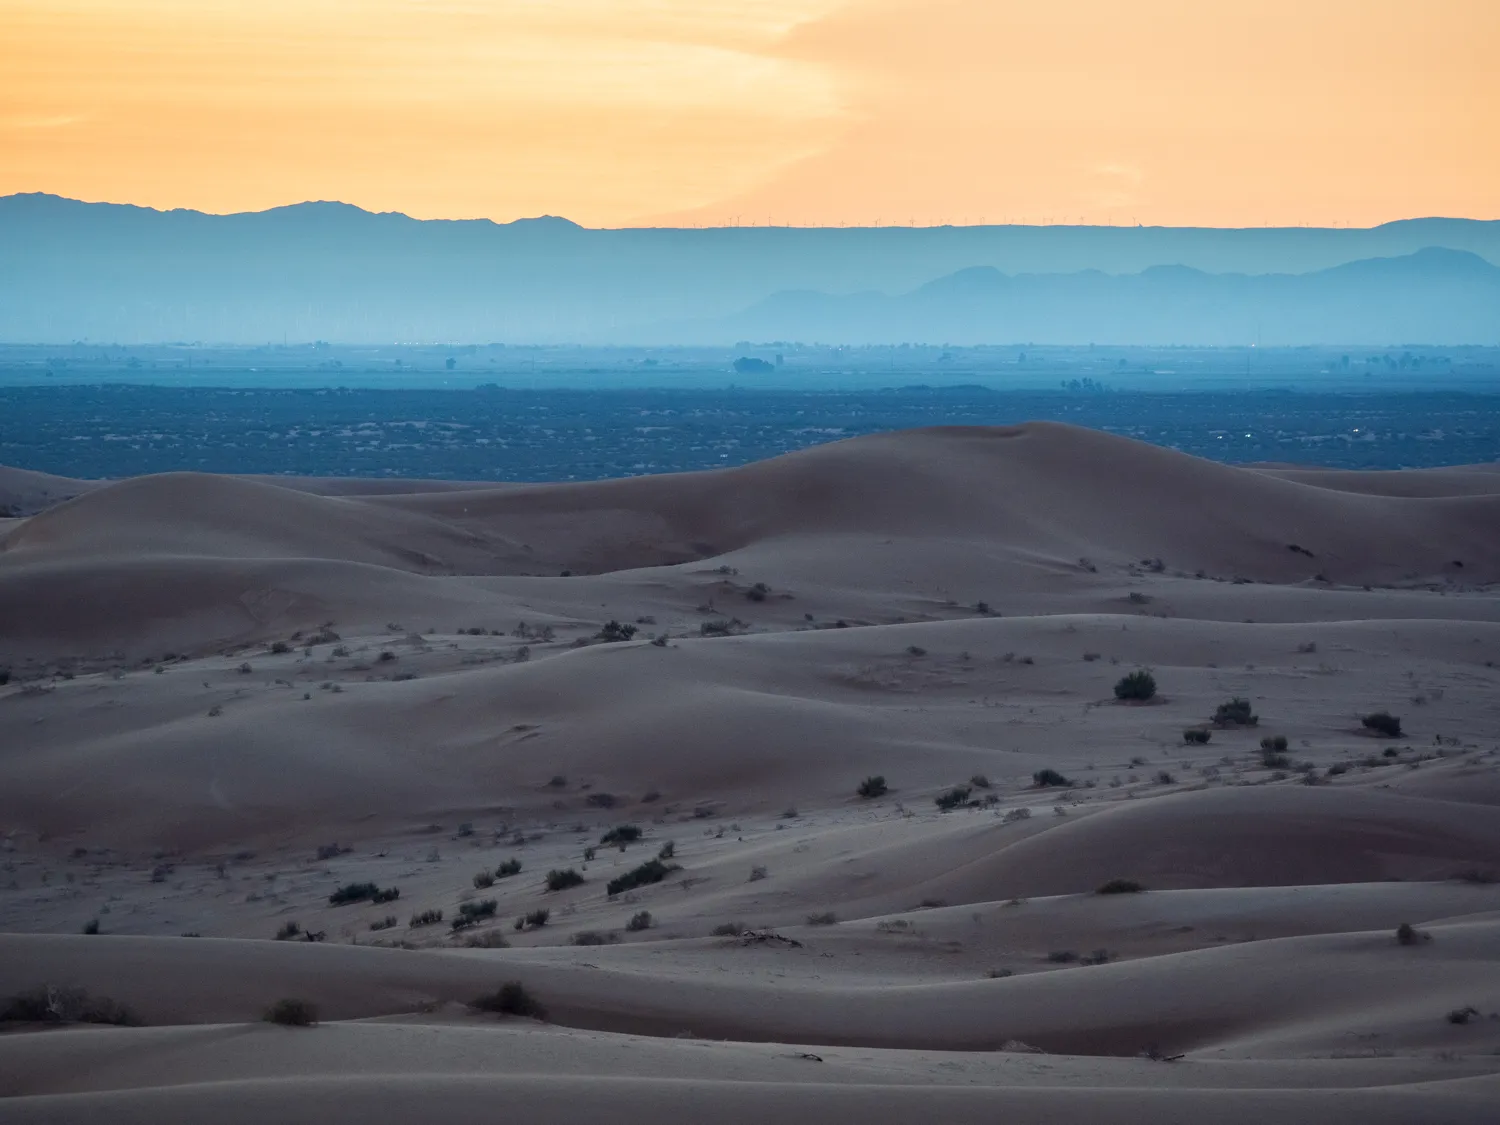 Imperial Sand Dunes, California